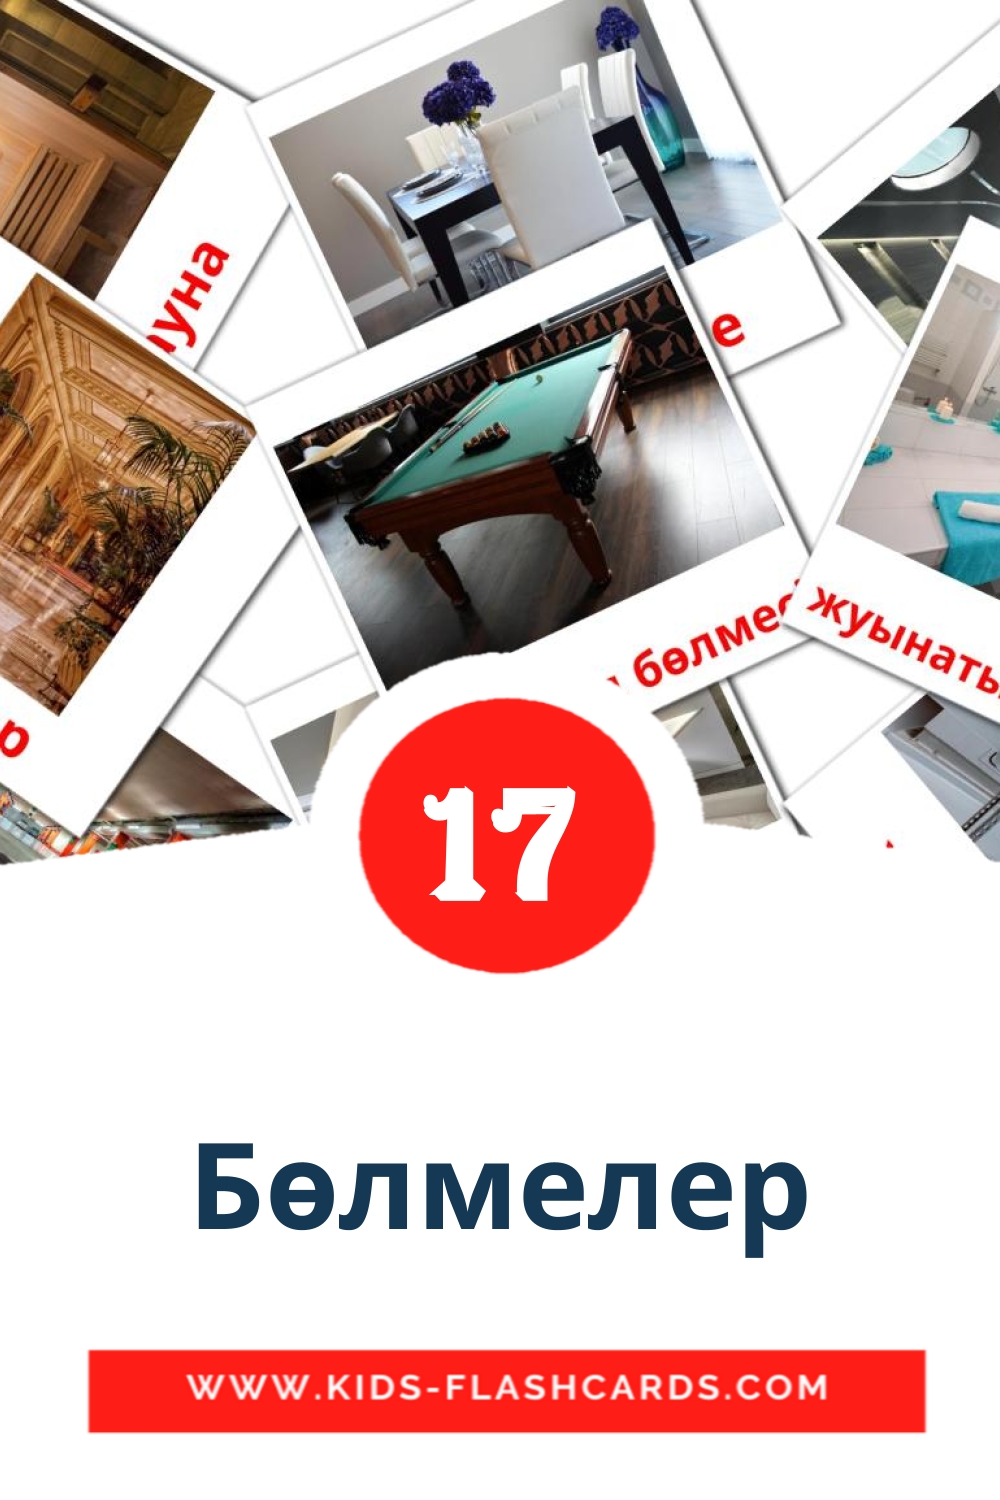 17 carte illustrate di Бөлмелер per la scuola materna in kazakh